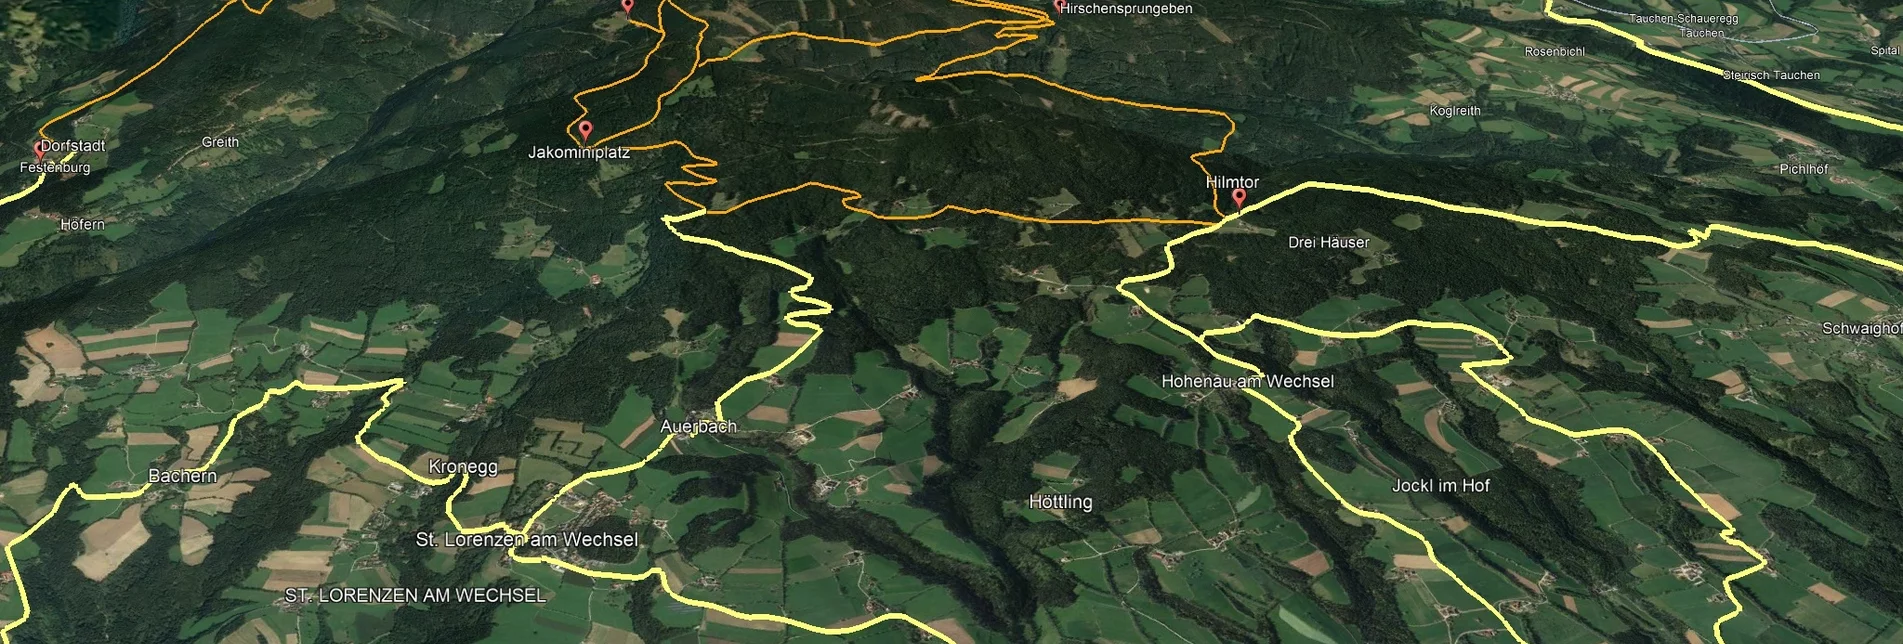 Mountain Biking Styrian Wexl Trails - Dorfstatt Route - Touren-Impression #1 | © Verein Tourismusentwicklung Steirischer Wechsel